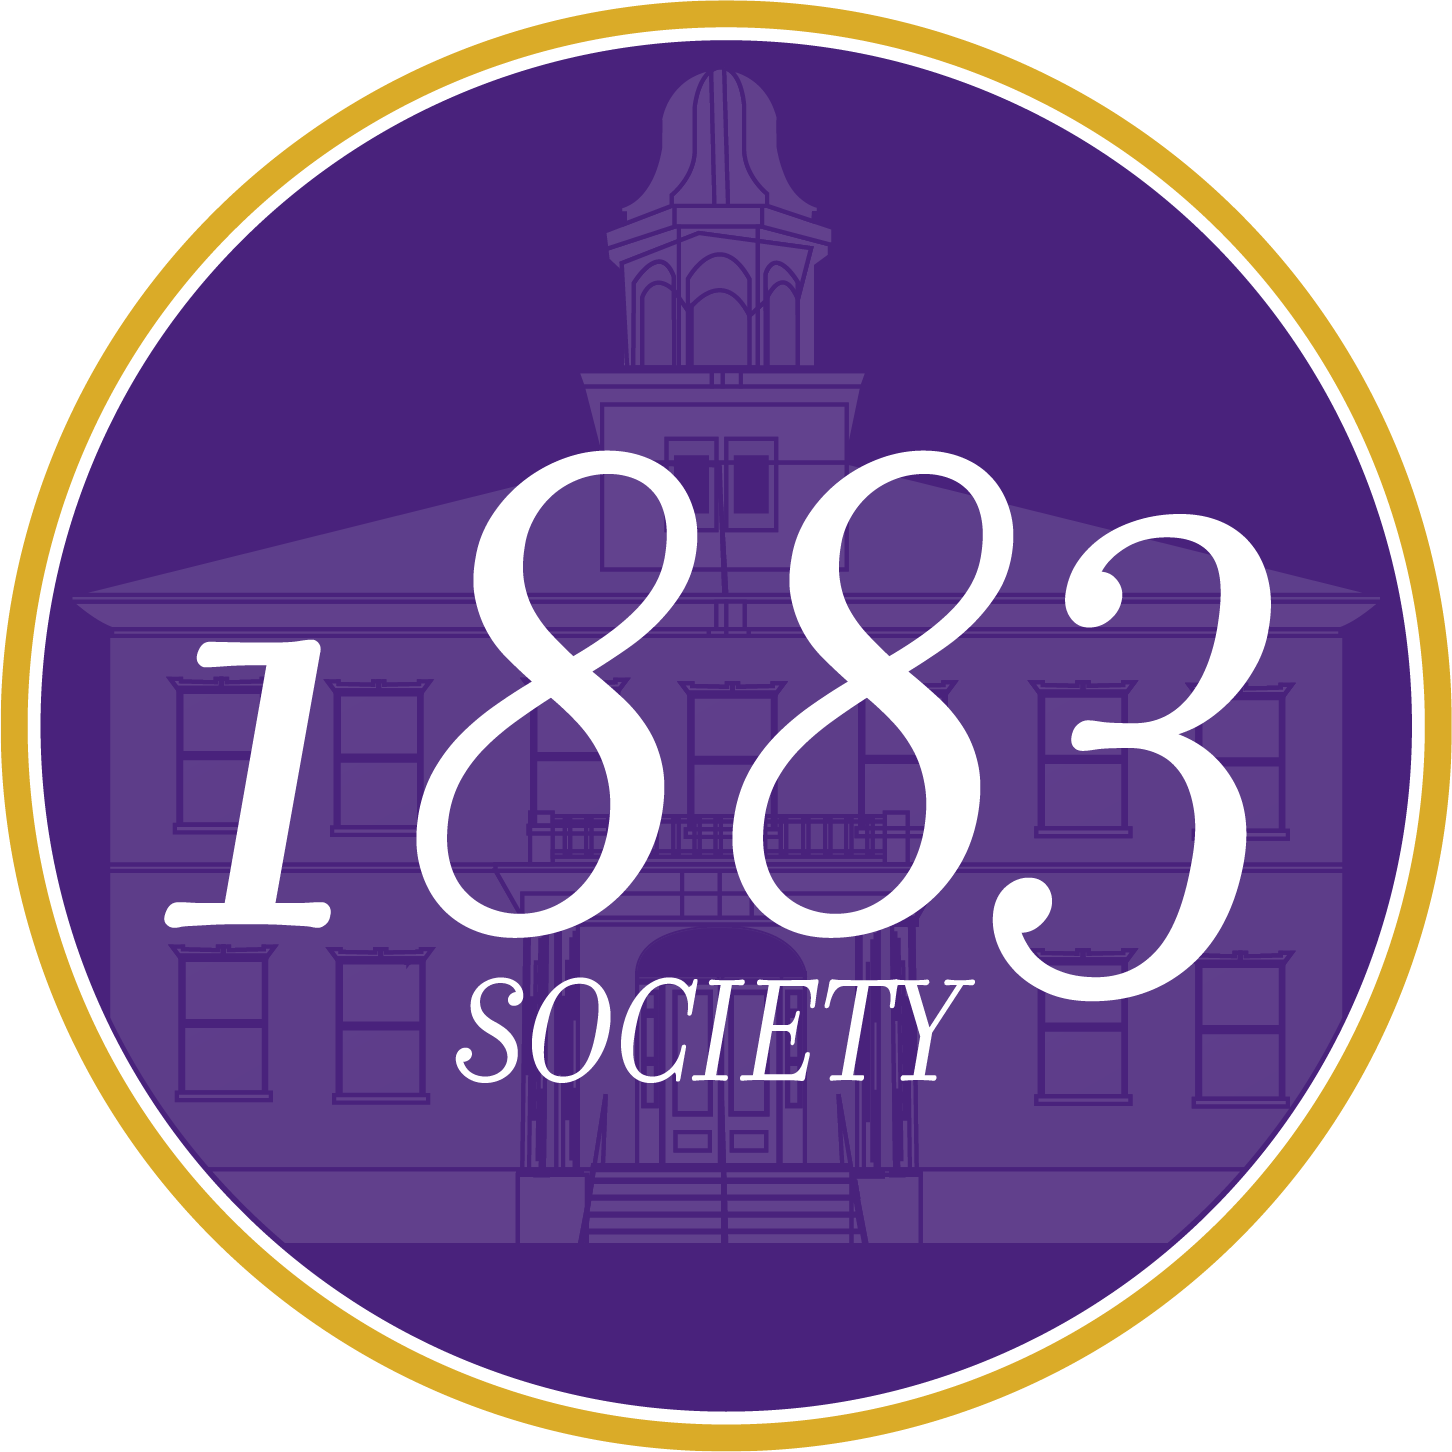 1883 Society Logo 2023.png